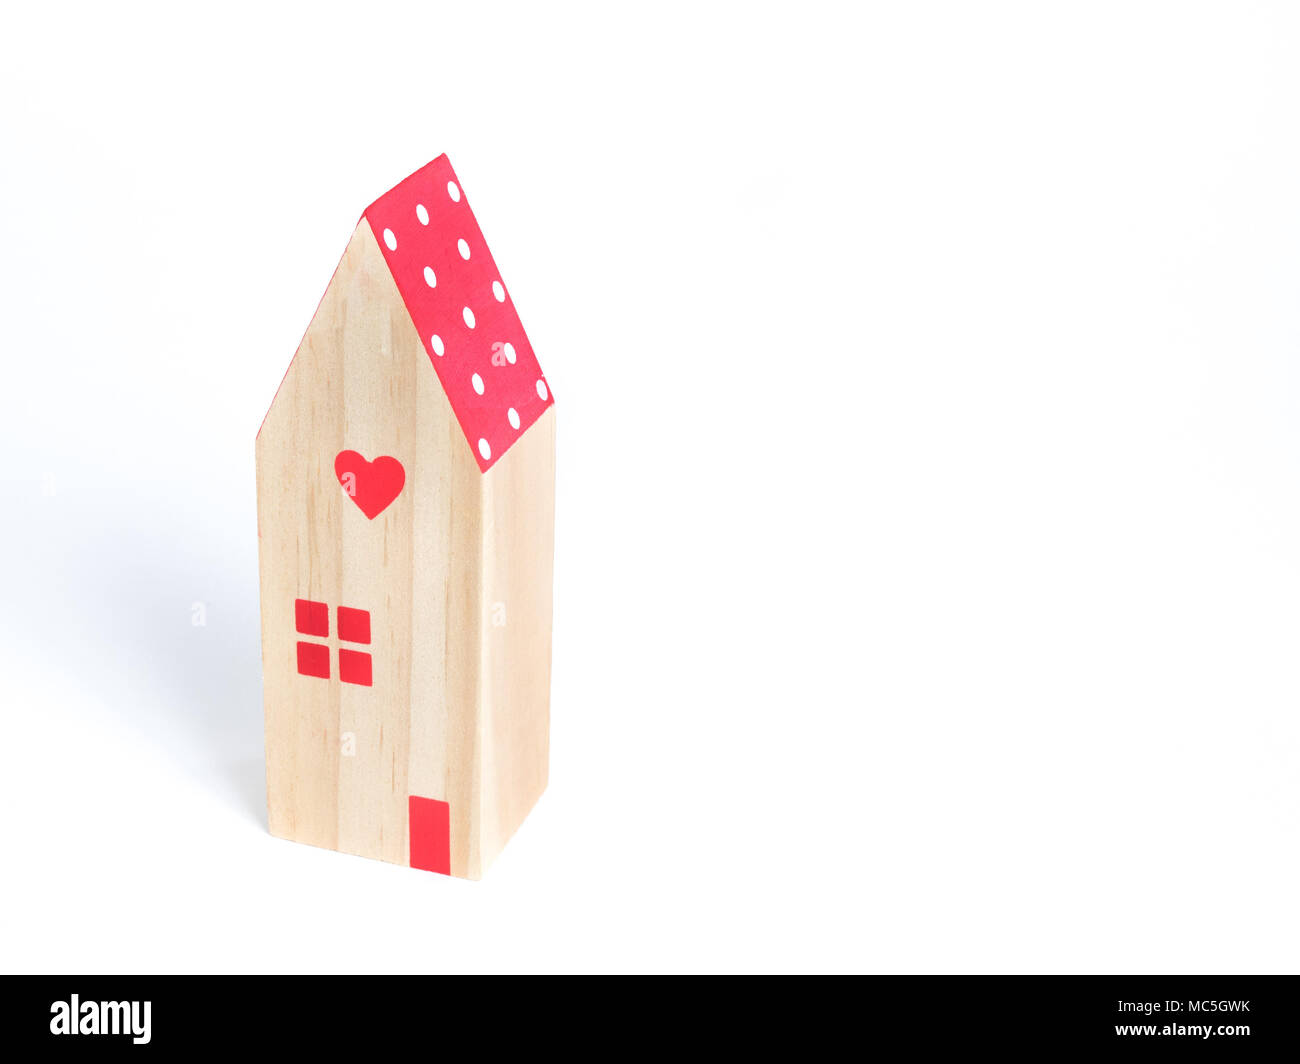 La miniature maison au toit rouge et cœur rouge sur fond blanc Banque D'Images